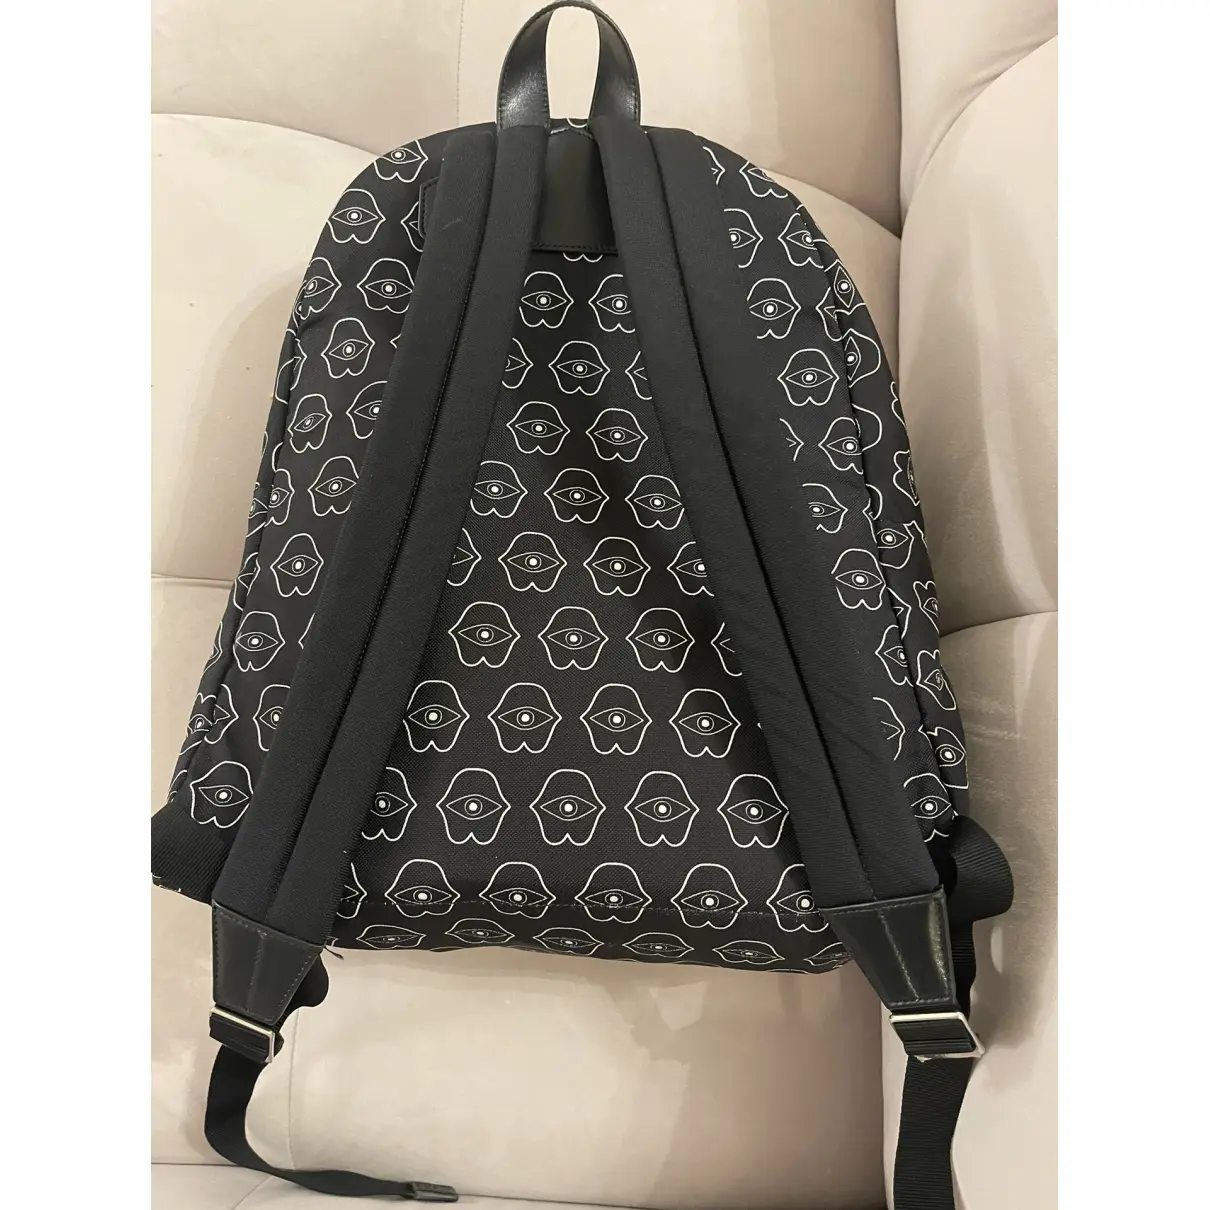 Buy Celine Cloth backpack online